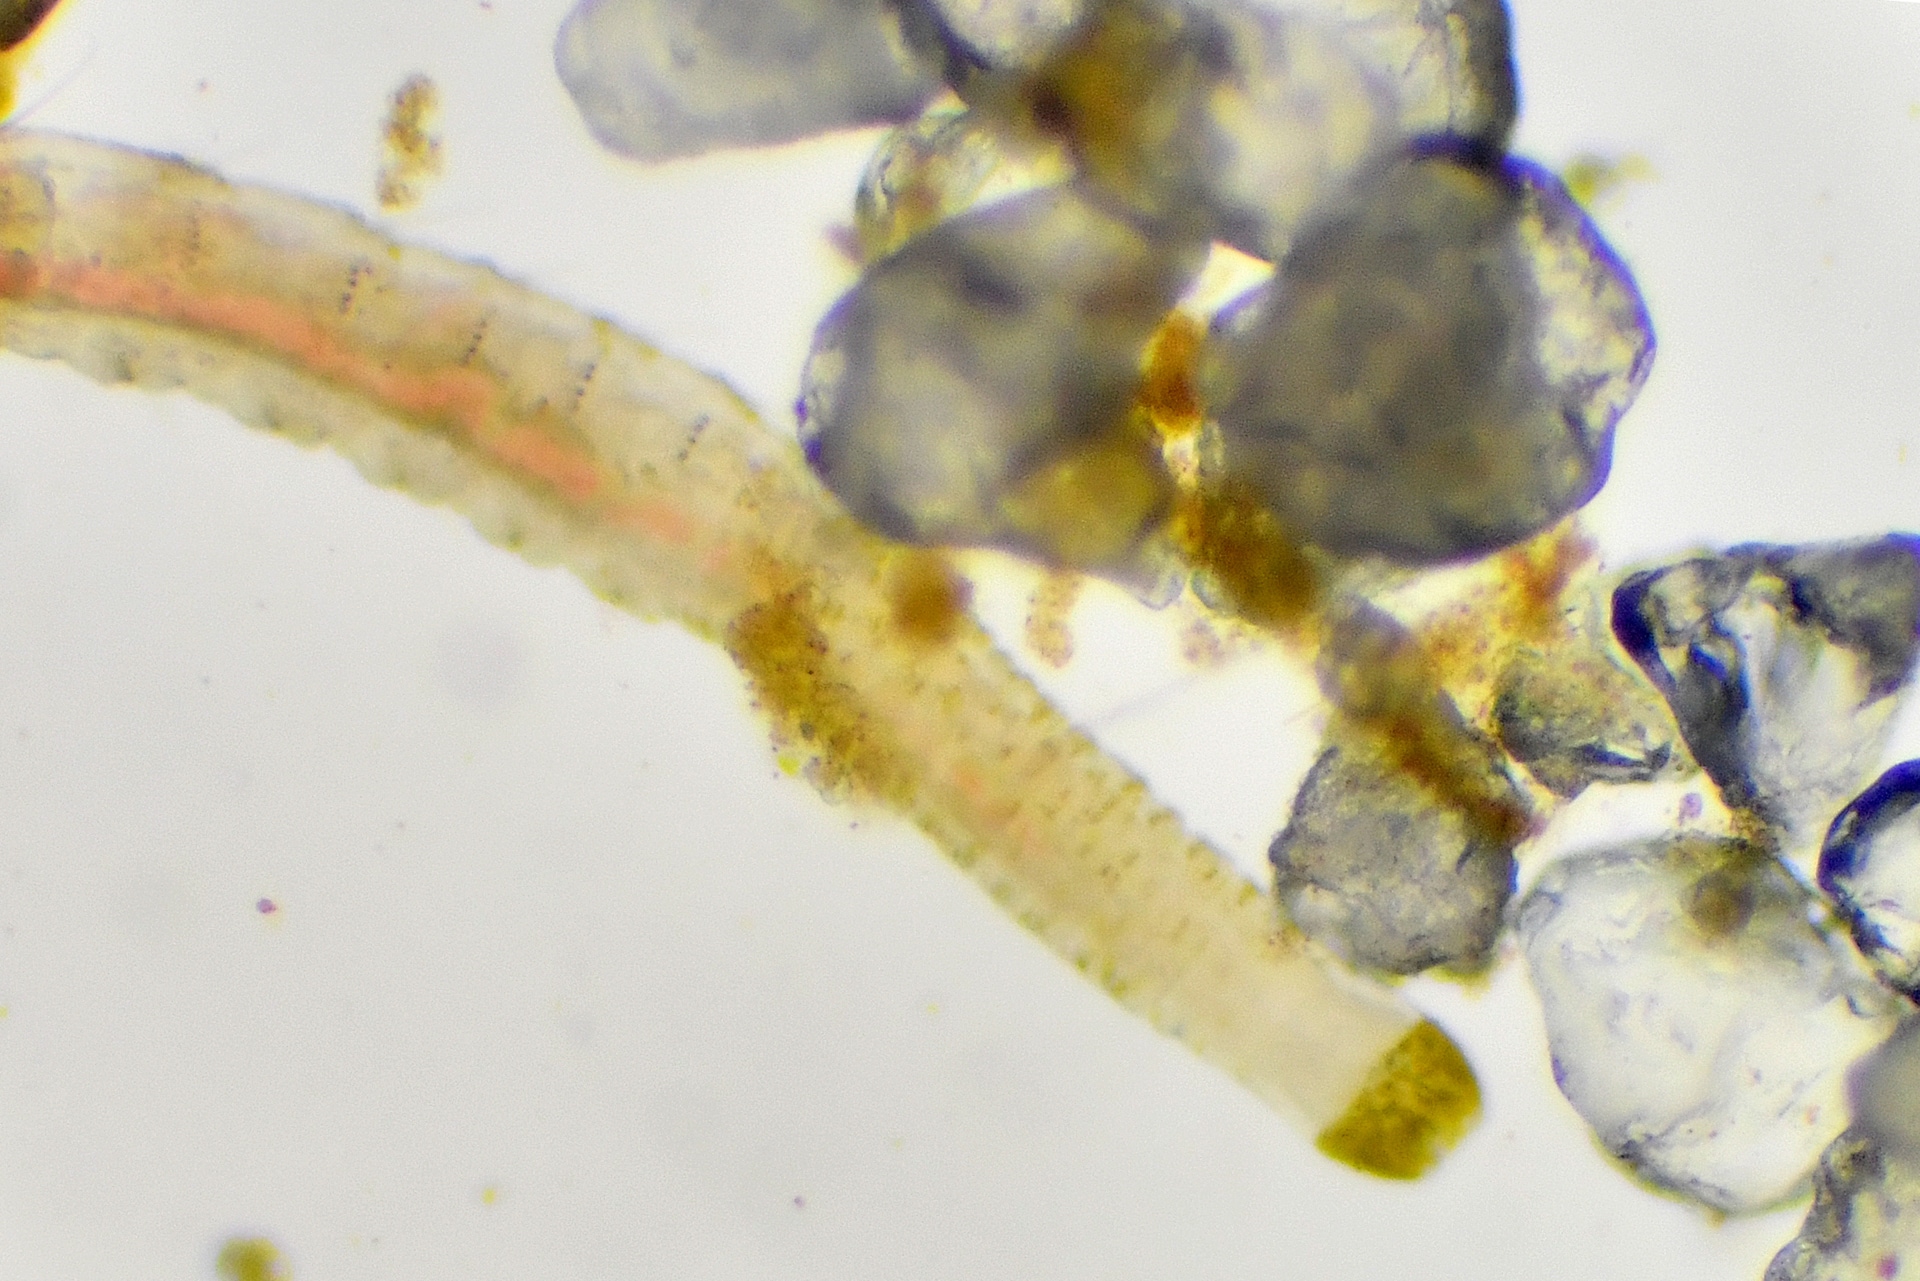 Una foto scattata al microscopio mostra un verme marino e granelli di sabbia.